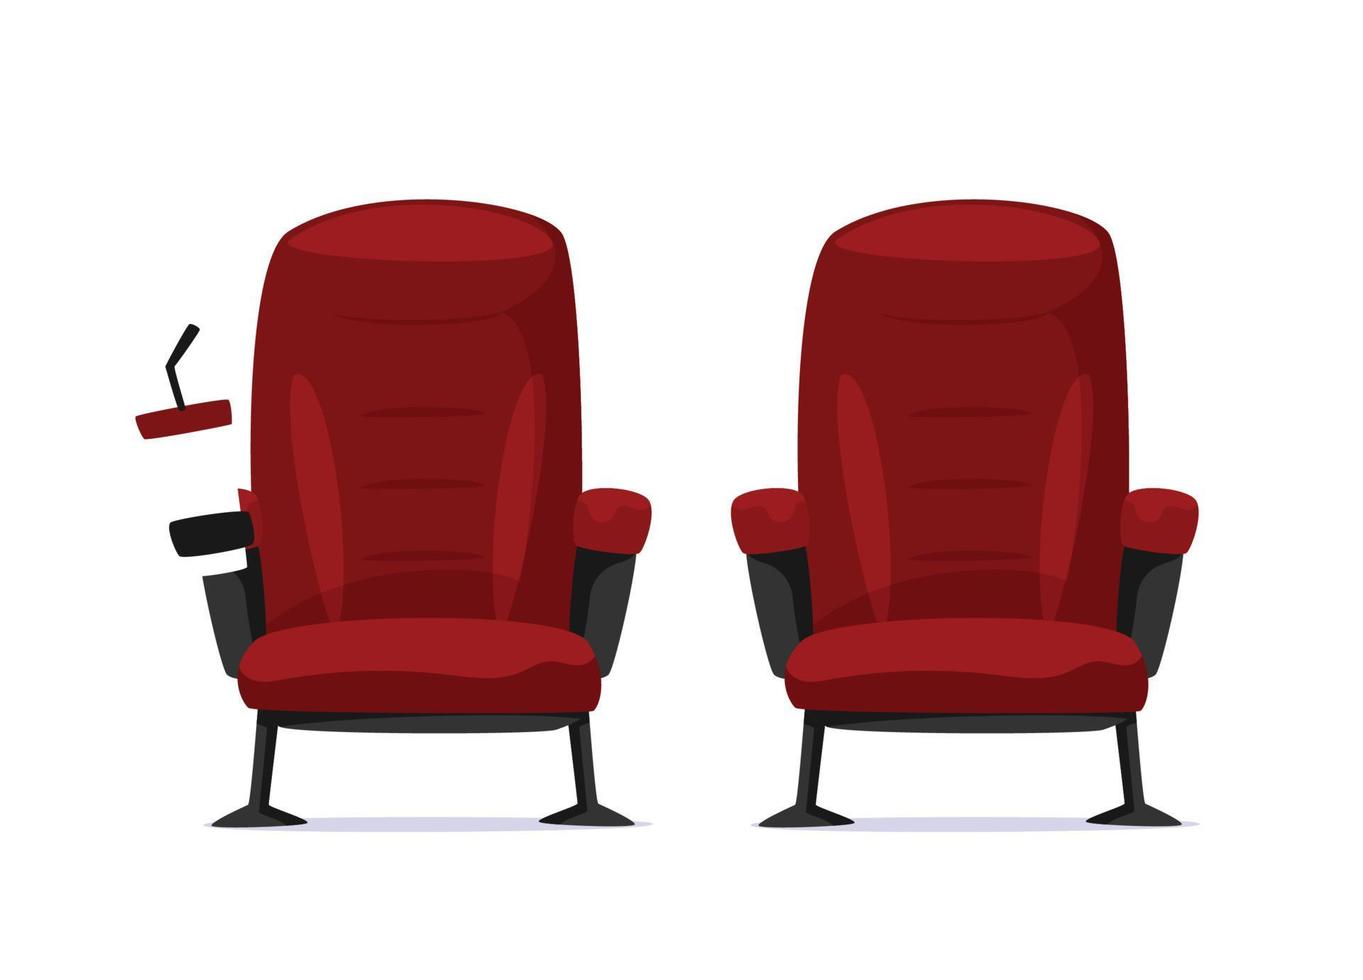 concepto de cine - vista frontal de la silla de cine roja vector